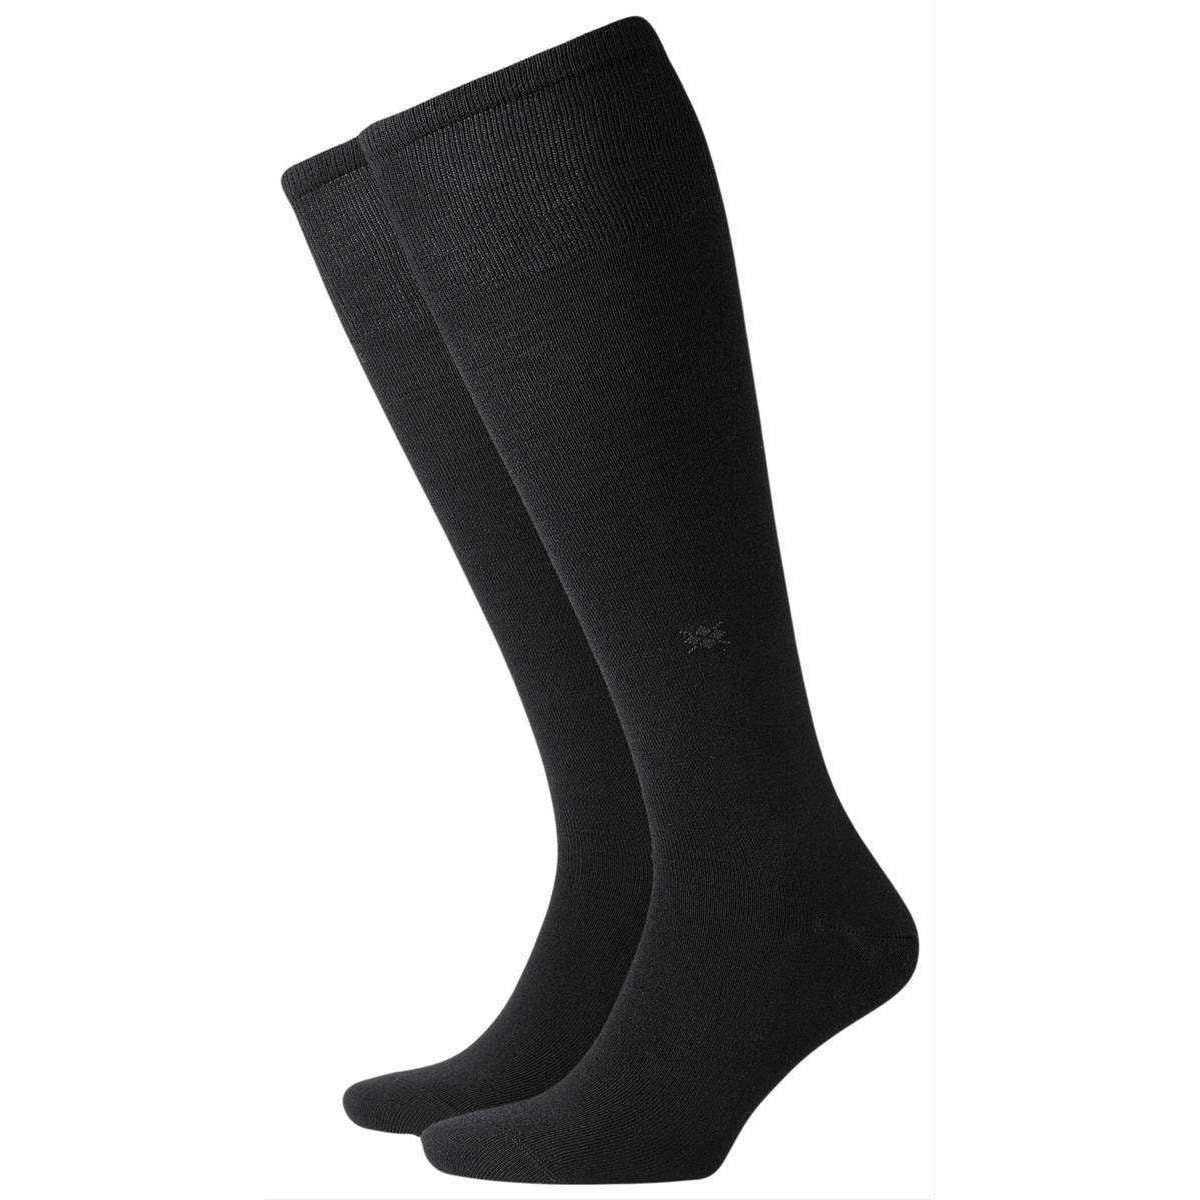 Burlington Leeds Knee High Socks - Black